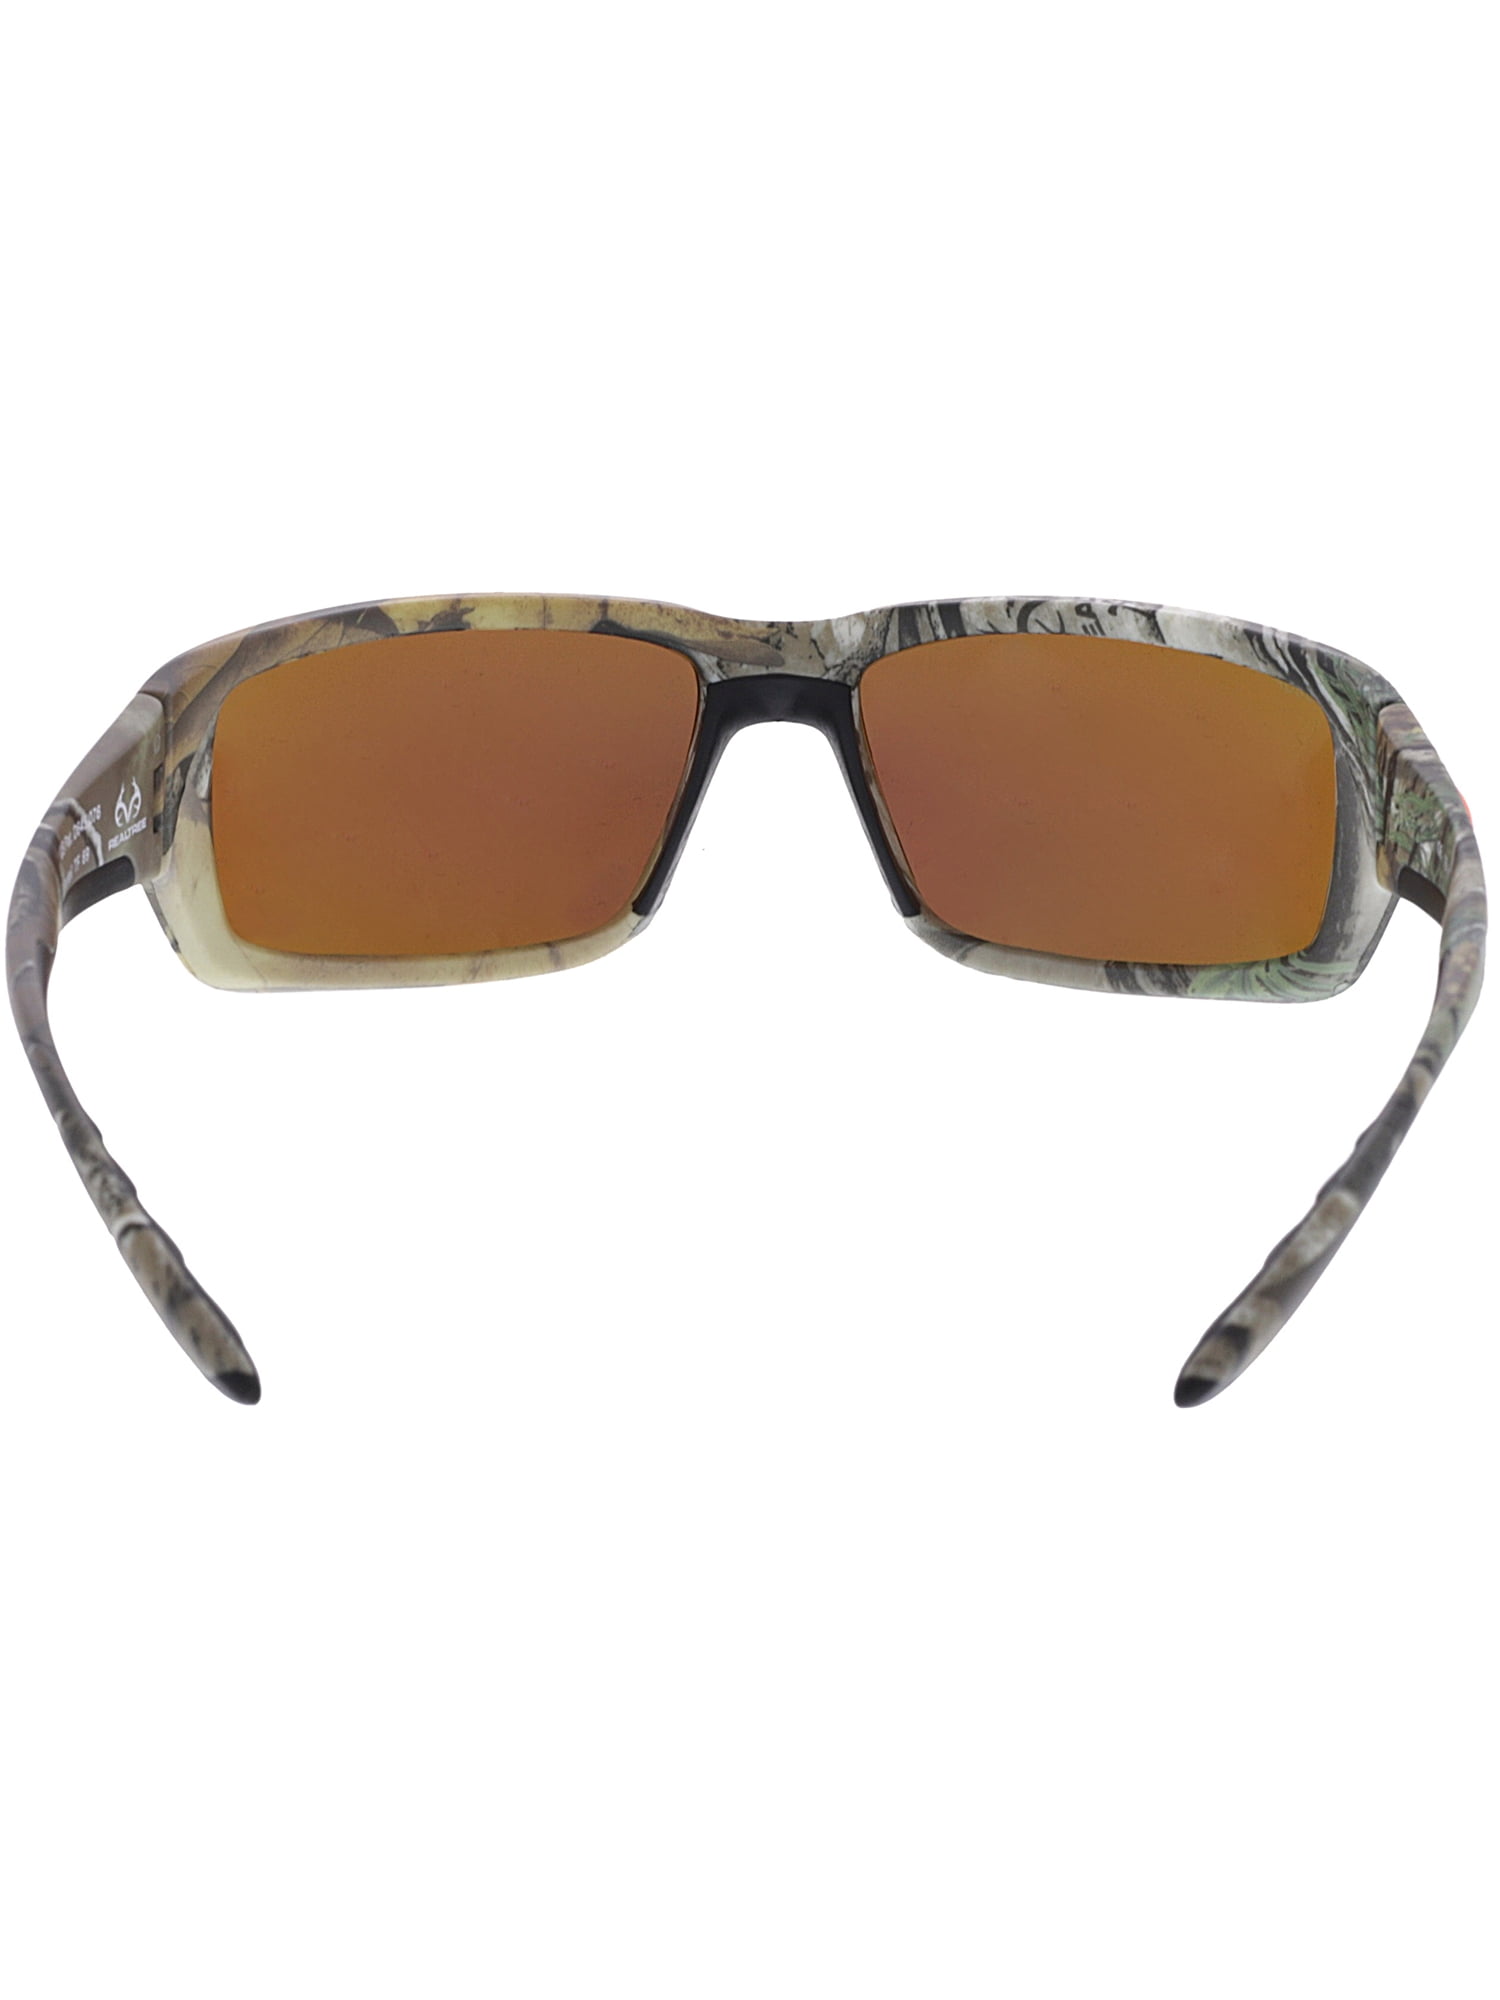 Costa Del Mar Fantail 580G Sunglasses Realtree Xtra Camo/Gray 580G Glass 